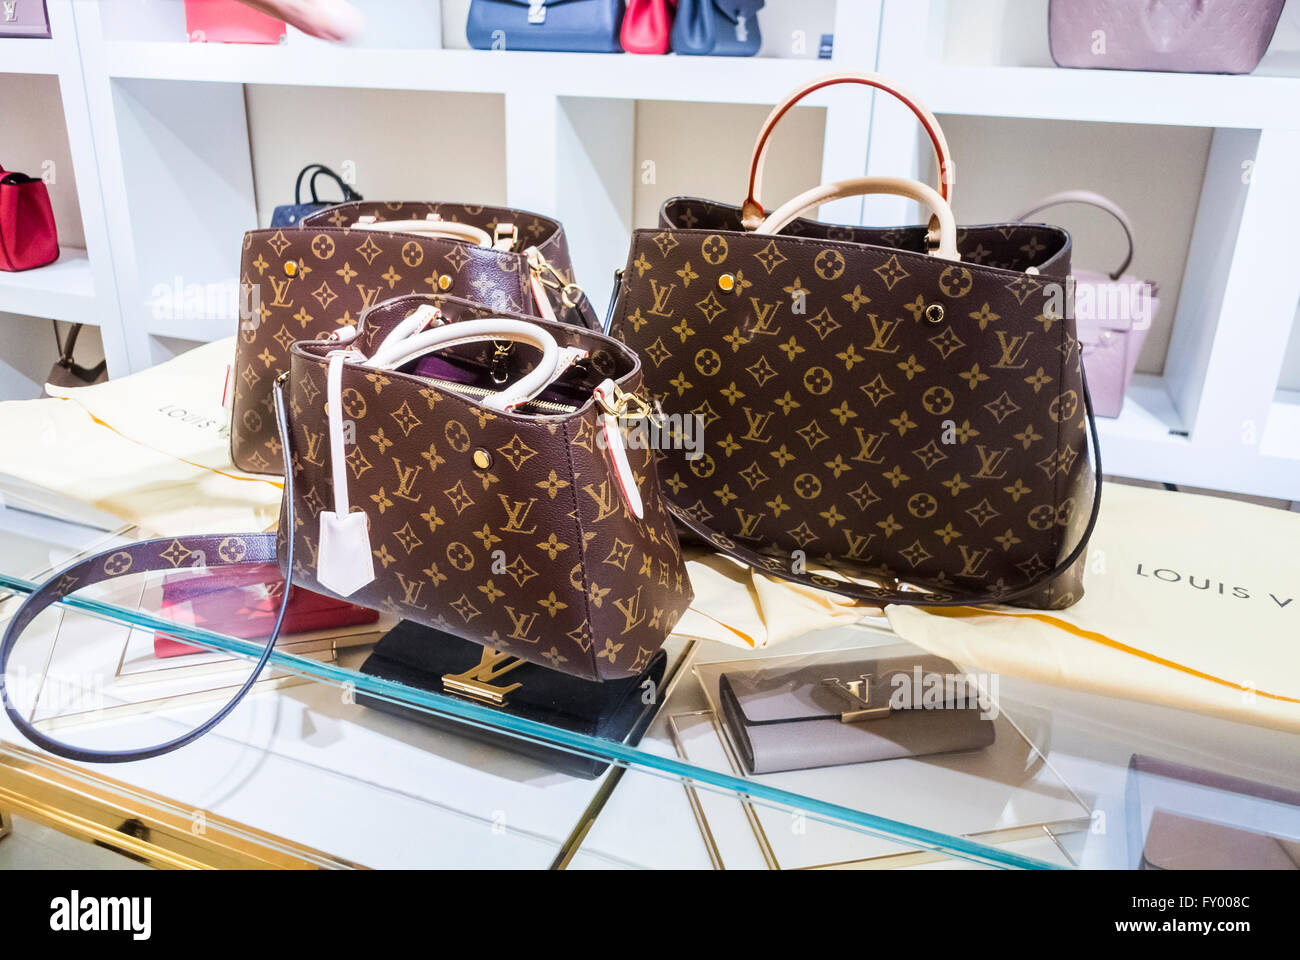 Bolsa Louis Vuitton premium incluye - Tienda bolsas y más